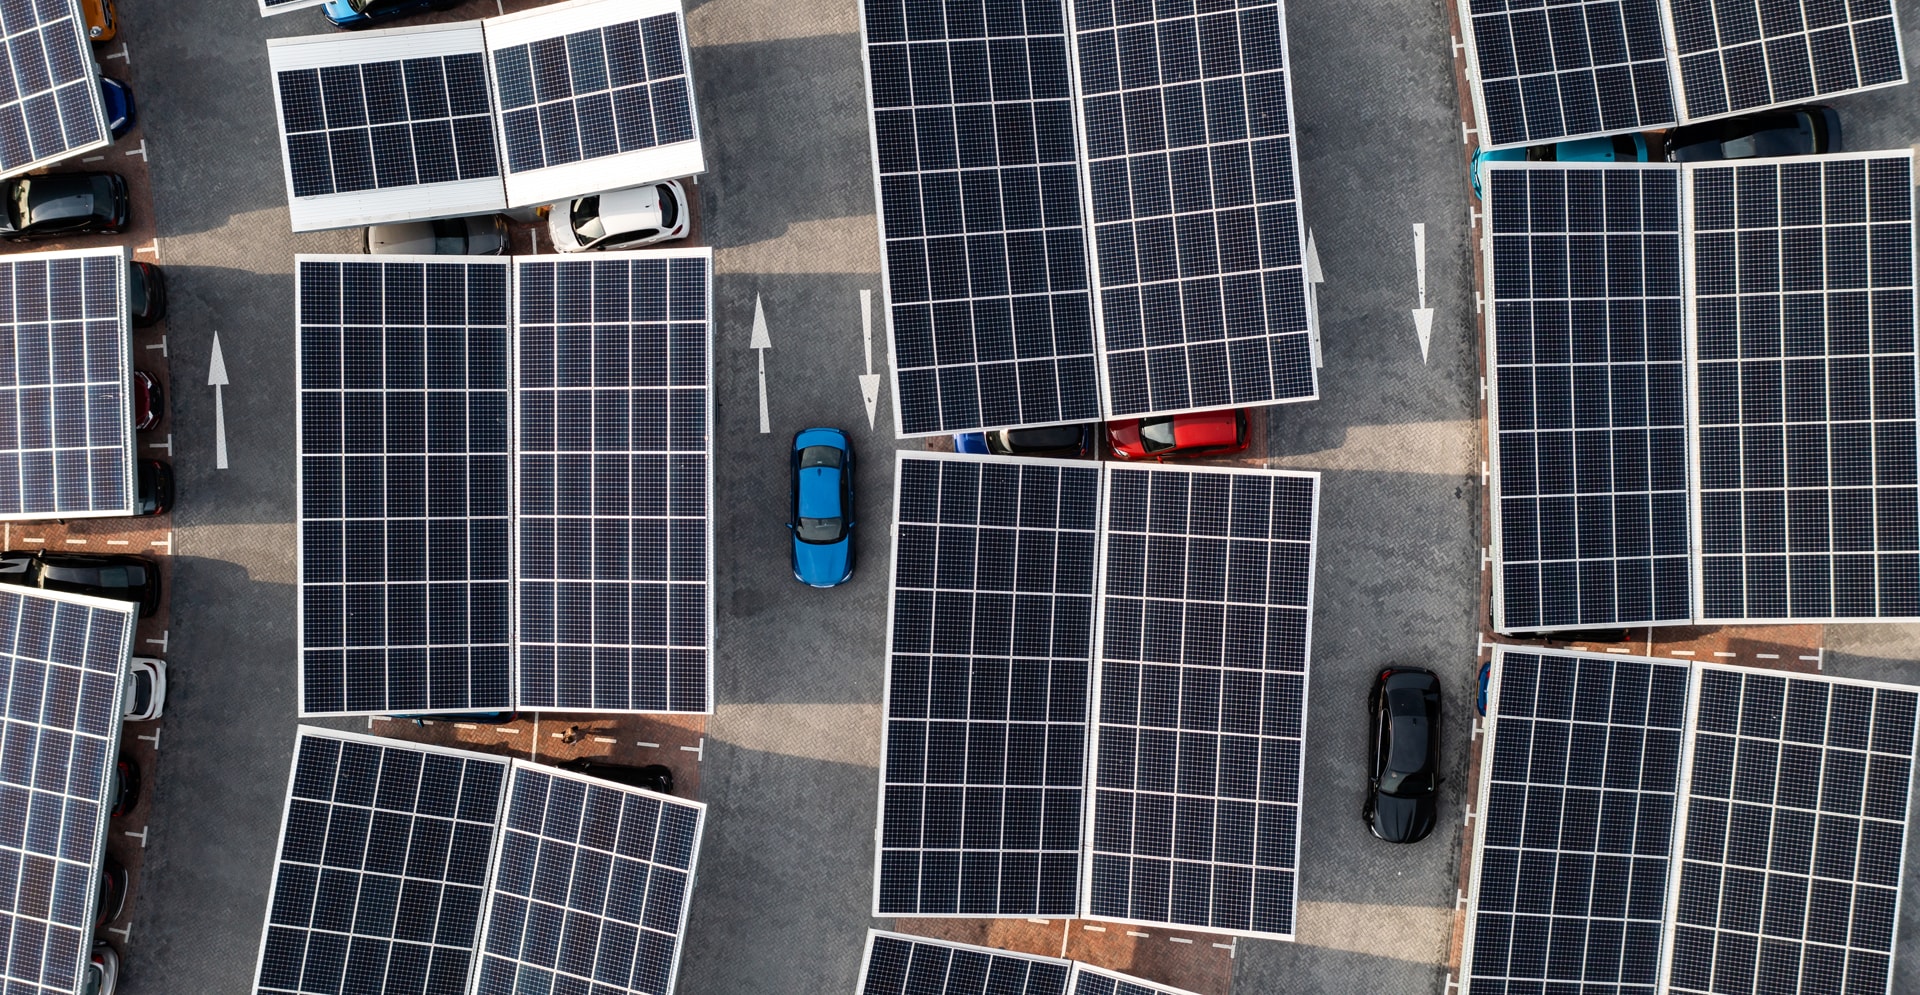 Stacja zasilania pojazdów panelami słonecznymi dla Infrastruktury Energetycznej i Magazynowania